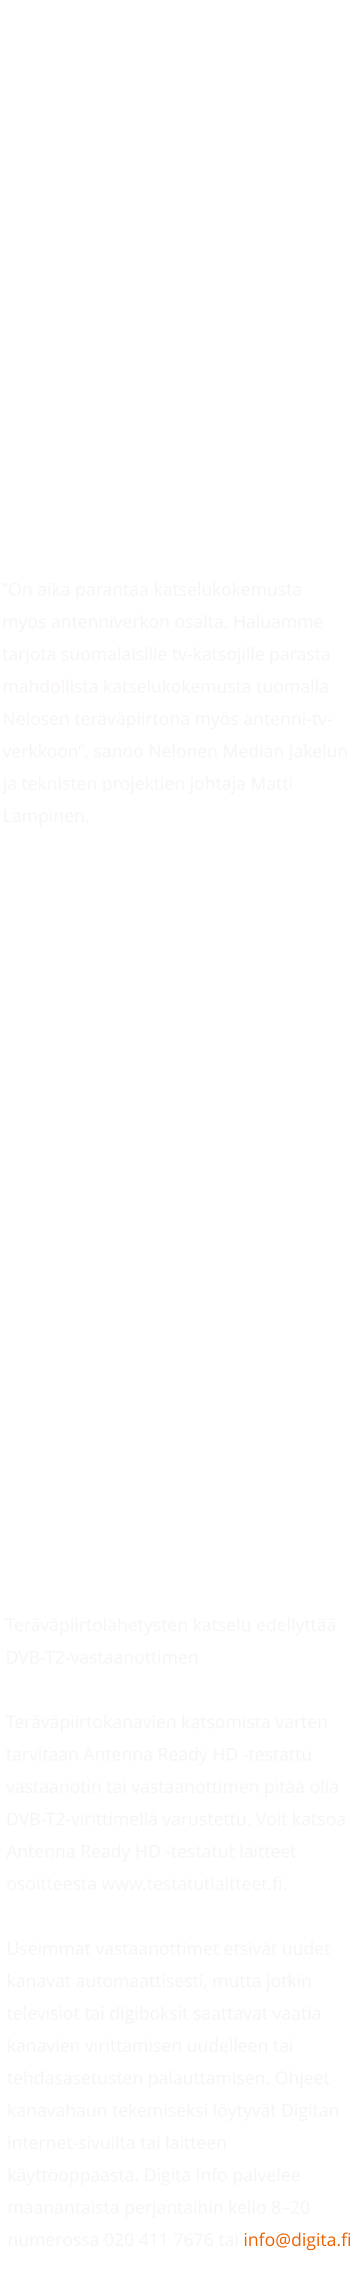 Nelonen aloittaa tervpiirtona AntenniTV:ss koko maassa 13.2.    Julkaistu:  13.2.2023  Sanoma Media Finland aloittaa Nelonen-kanavan lhetykset tervpiirtona valtakunnallisesti 99,96 prosentin peitolla Digitan antenni-tv-verkossa maanantaina 13.2.2023 kanavapaikalla 24. Nelonen HD-kanavan ohjelmisto on identtinen Nelonen-kanavan ohjelmiston kanssa, mutta kuvanlaatu on tarkempi. Nelonen-kanavalla tarjolla olevat HybridiTV-palvelut ovat luonnollisesti saatavilla mys Nelonen HD-kanavalla.  On aika parantaa katselukokemusta mys antenniverkon osalta. Haluamme tarjota suomalaisille tv-katsojille parasta mahdollista katselukokemusta tuomalla Nelosen tervpiirtona mys antenni-tv-verkkoon, sanoo Nelonen Median Jakelun ja teknisten projektien johtaja Matti Lampinen.  Olemme erittin tyytyvisi, ett saamme antenni-tv-verkkoon trkeimmt tv-kanavat tervpiirtomuodossa. Tv-toimiala suunnittelee parhaillaan HD-siirtymn tarkempaa aikataulua. Tll hetkell arvioimme, ett siirtym yksinomaan tervpiirtolhetyksiin voisi tapahtuma vuosien 20242025 aikana, kertoo Digitan TV-liiketoimintajohtaja Teppo Ahonen.  AntenniTV tarjoaa tv-katsojille yli 20 maksutonta tv-kanavaa. Antenni-tv-verkon toiminnan jatkuvuuden ja palvelutason turvaaminen on Suomessa trke. Kynniss oleva HD- ja ly-tv-siirtym parantaa AntenniTV:n kilpailukyky, tehostaa taajuuksien kytt sek sst energiaa. Lisksi HD-siirtym parantaa tv-talouksien valinnanmahdollisuuksia korkealaatuisten televisiolhetysten vastaanotossa.  Tervpiirtolhetysten katselu edellytt DVB-T2-vastaanottimen  Tervpiirtokanavien katsomista varten tarvitaan Antenna Ready HD -testattu vastaanotin tai vastaanottimen pit olla DVB-T2-virittimell varustettu. Voit katsoa Antenna Ready HD -testatut laitteet osoitteesta www.testatutlaitteet.fi.  Useimmat vastaanottimet etsivt uudet kanavat automaattisesti, mutta jotkin televisiot tai digiboksit saattavat vaatia kanavien virittmisen uudelleen tai tehdasasetusten palauttamisen. Ohjeet kanavahaun tekemiseksi lytyvt Digitan internet-sivuilta tai laitteen kyttoppaasta. Digita Info palvelee maanantaista perjantaihin kello 820 numerossa 020 411 7676 tai info@digita.fi